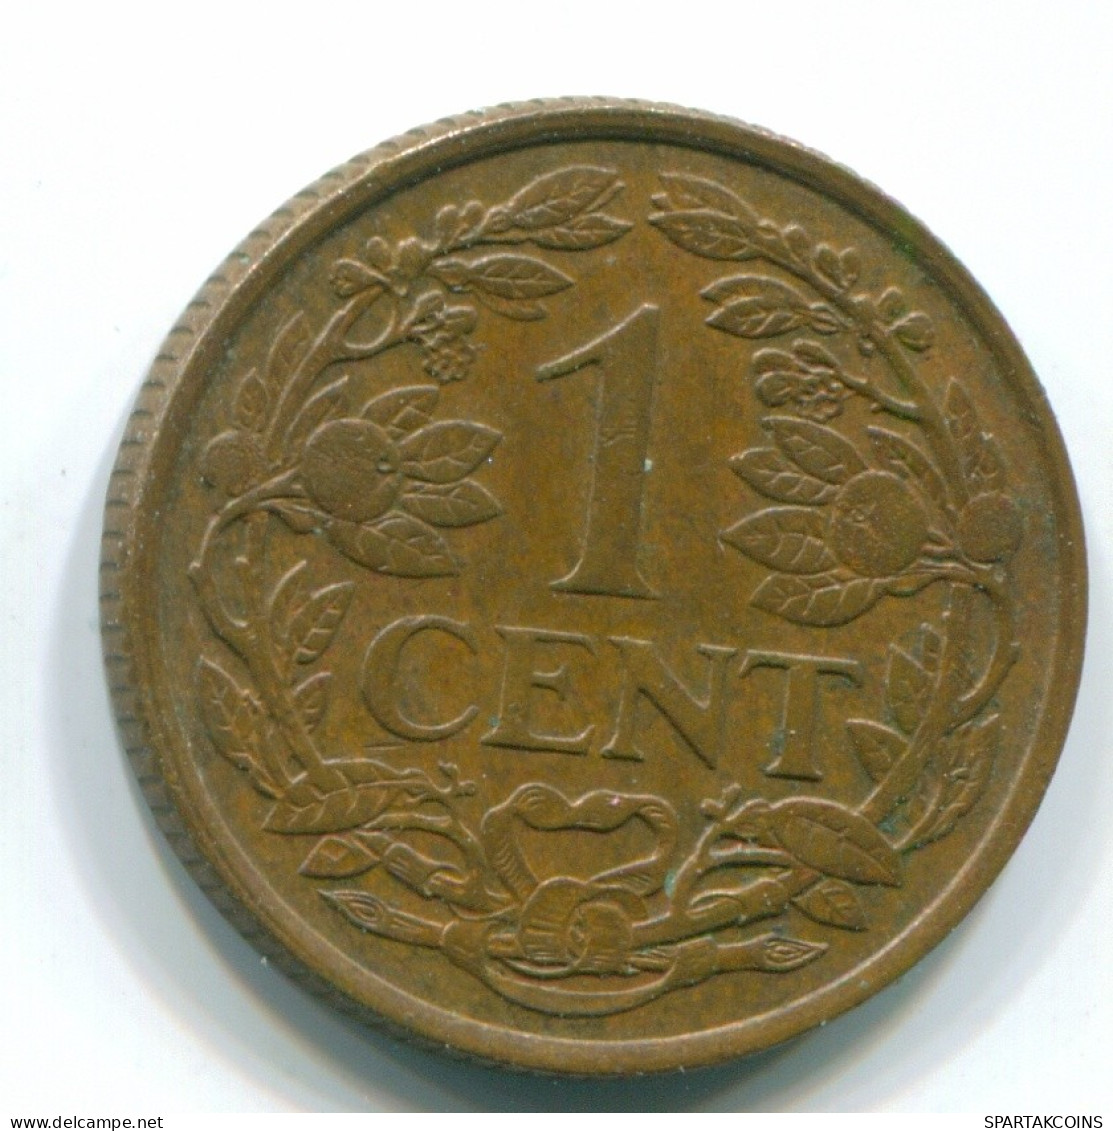 1 CENT 1967 NIEDERLÄNDISCHE ANTILLEN Bronze Fish Koloniale Münze #S11135.D.A - Niederländische Antillen